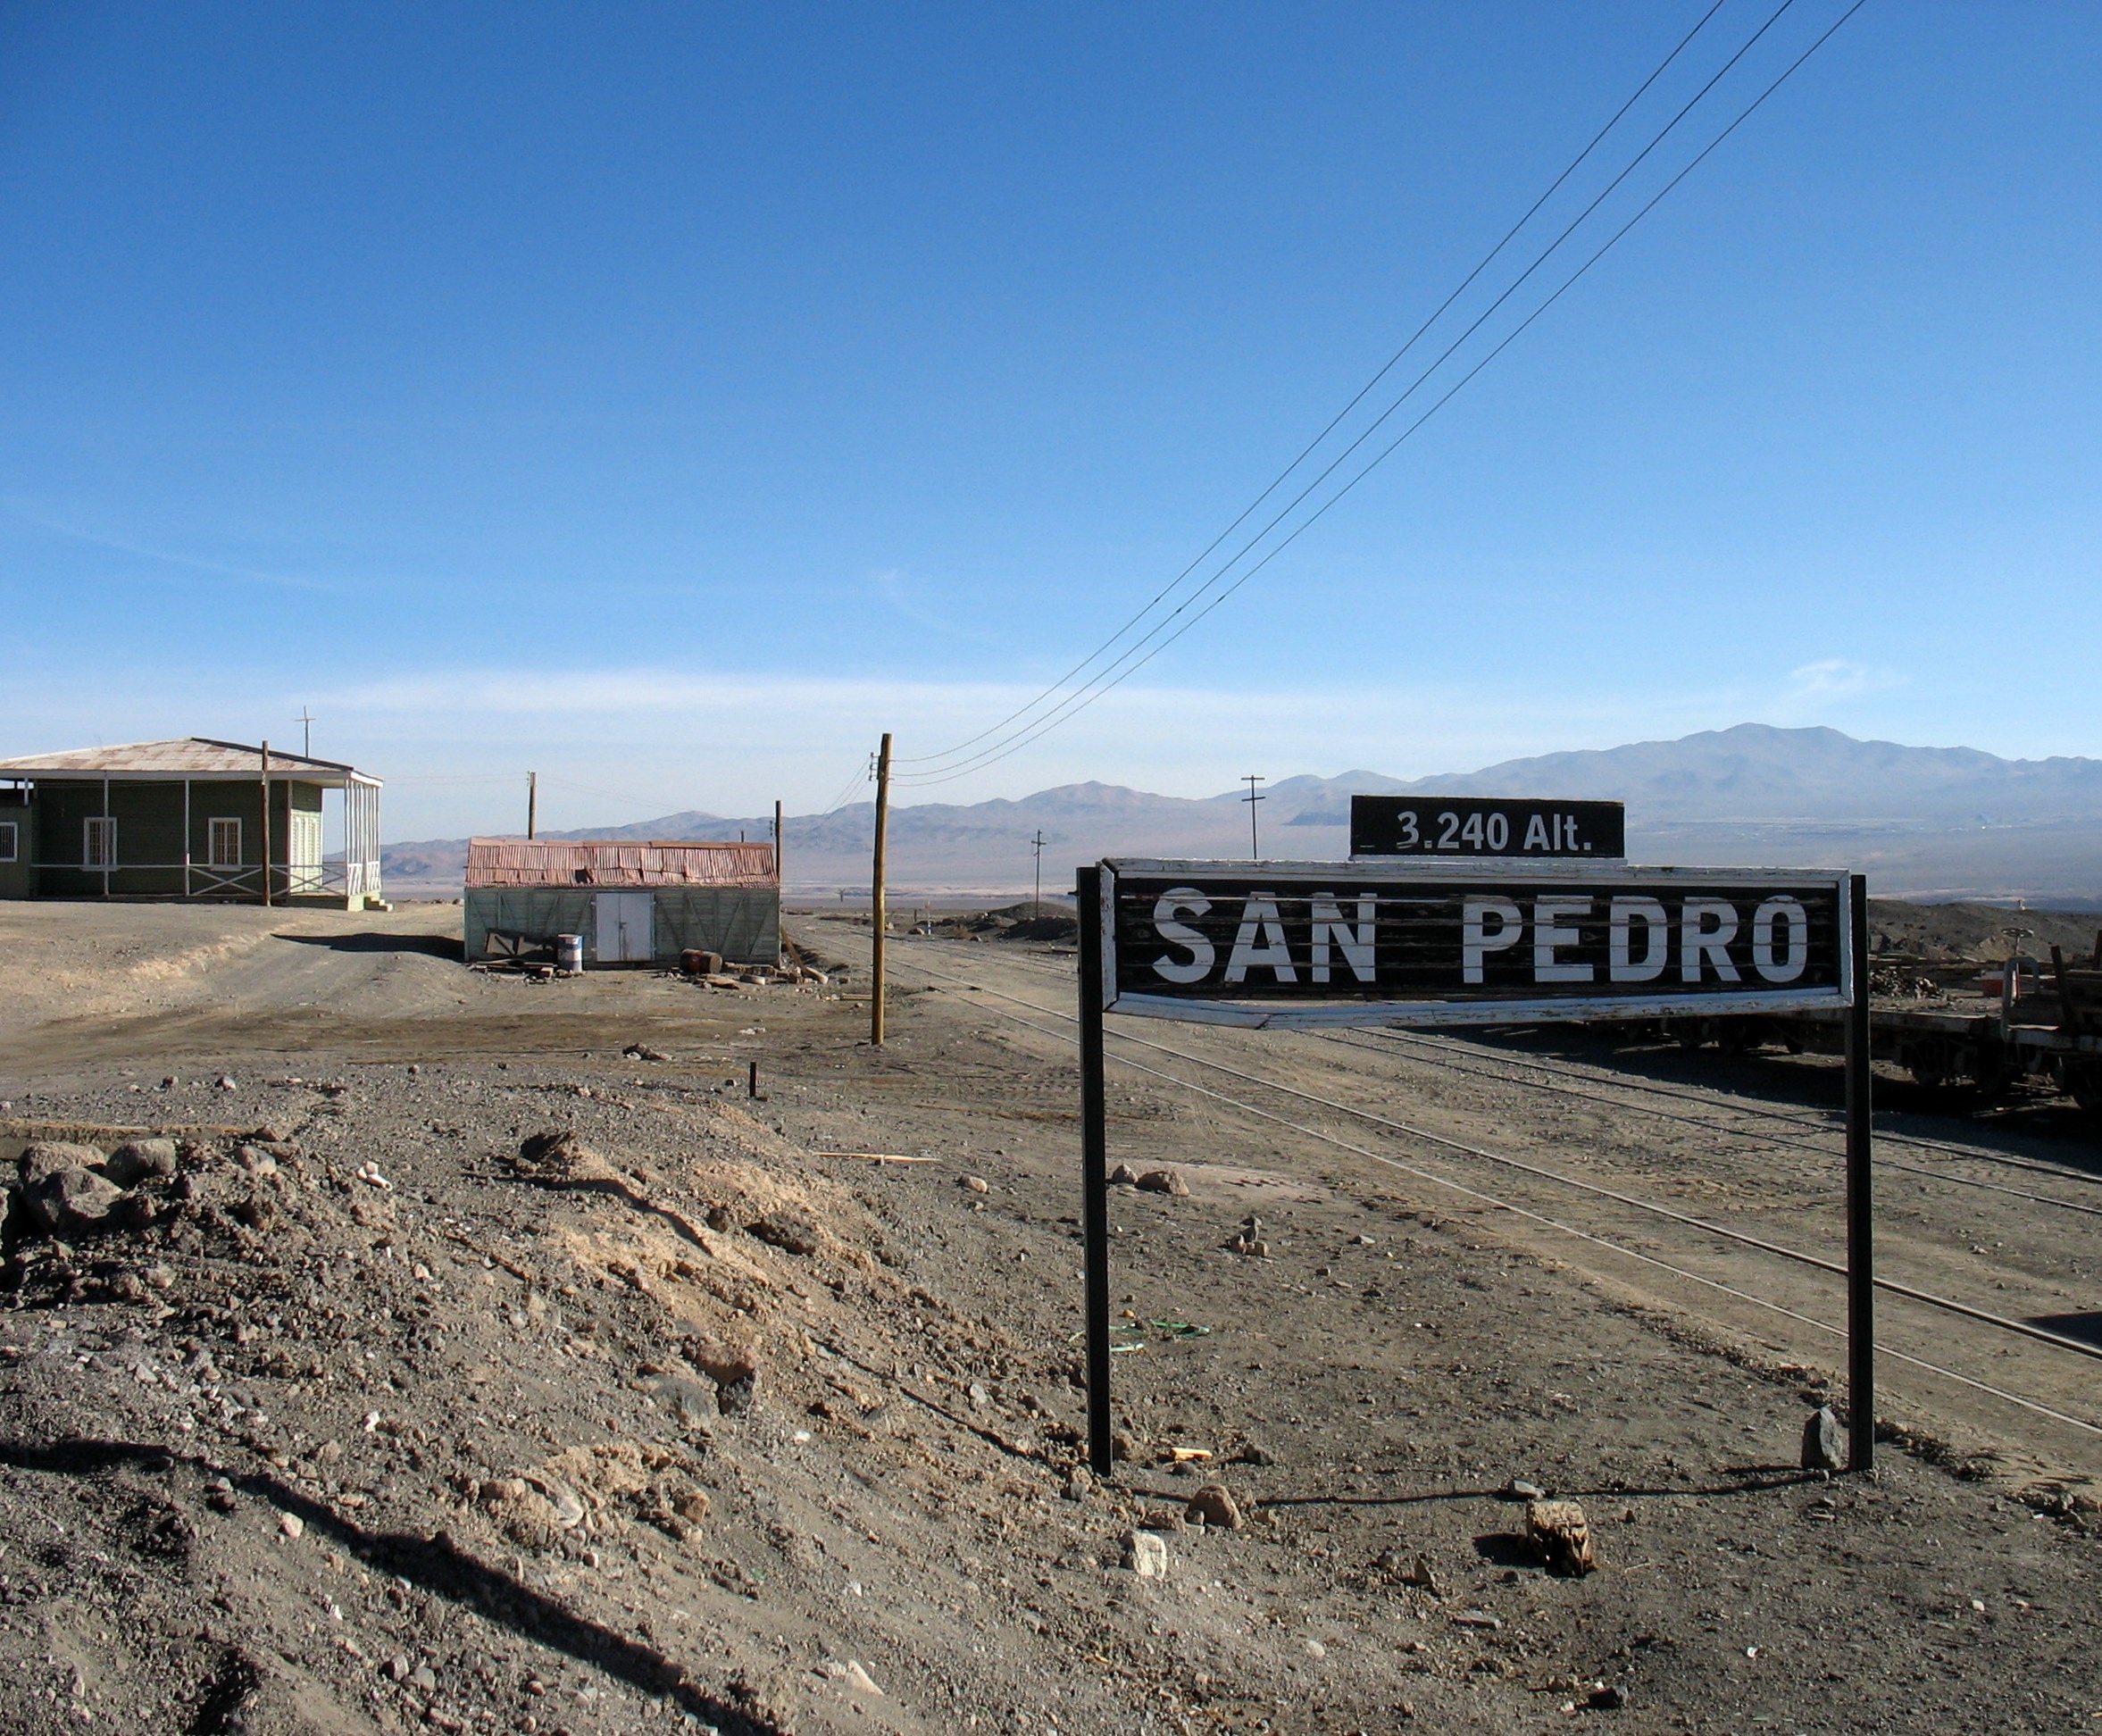 San Pedro, Atacama Desert. Photo by Anita Carrasco.